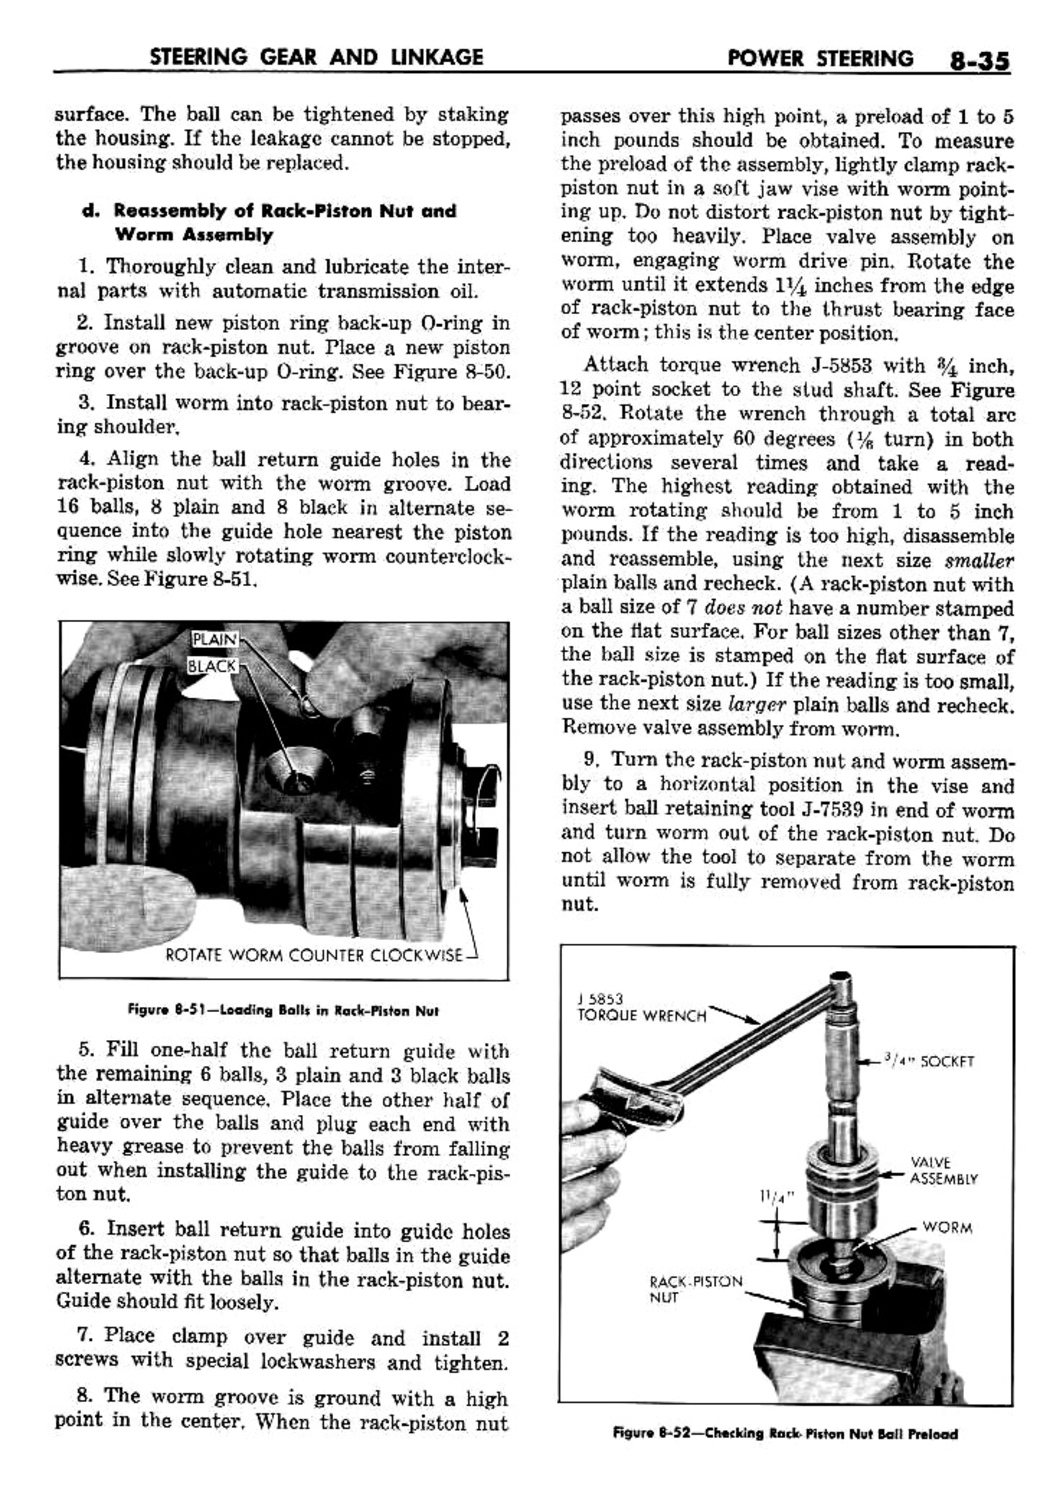 n_09 1960 Buick Shop Manual - Steering-035-035.jpg